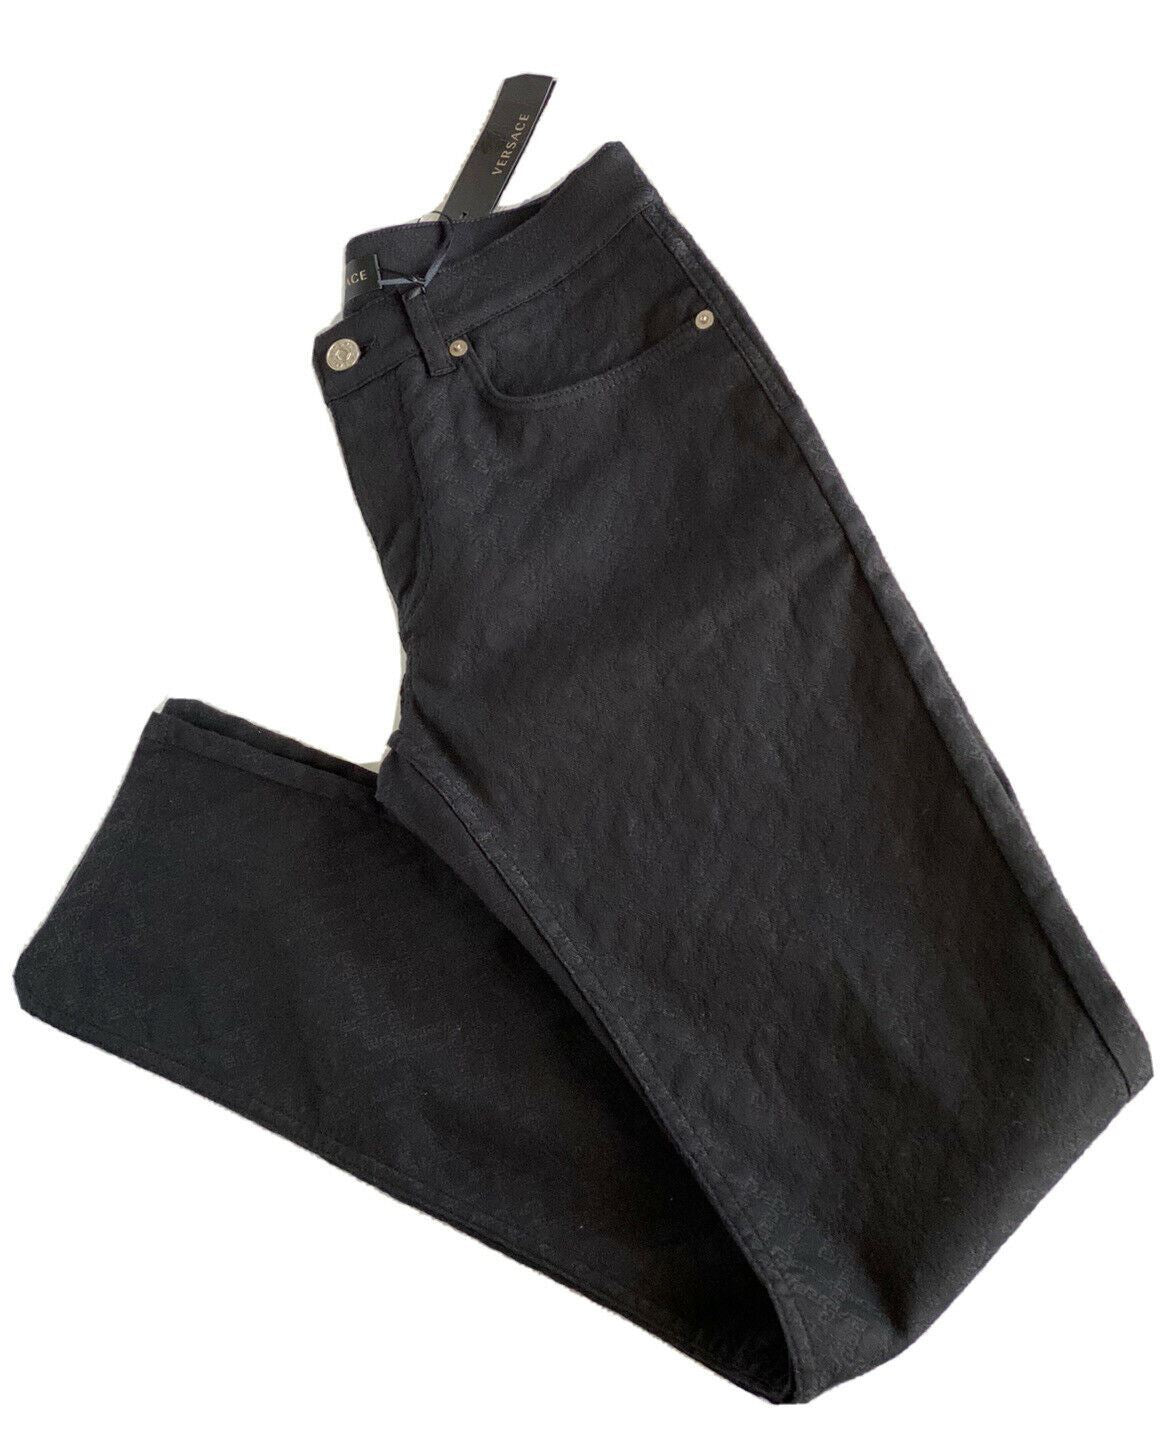 Мужские черные джинсы Versace NWT, 695 долларов США, размер 30, США A81832, сделано в Италии